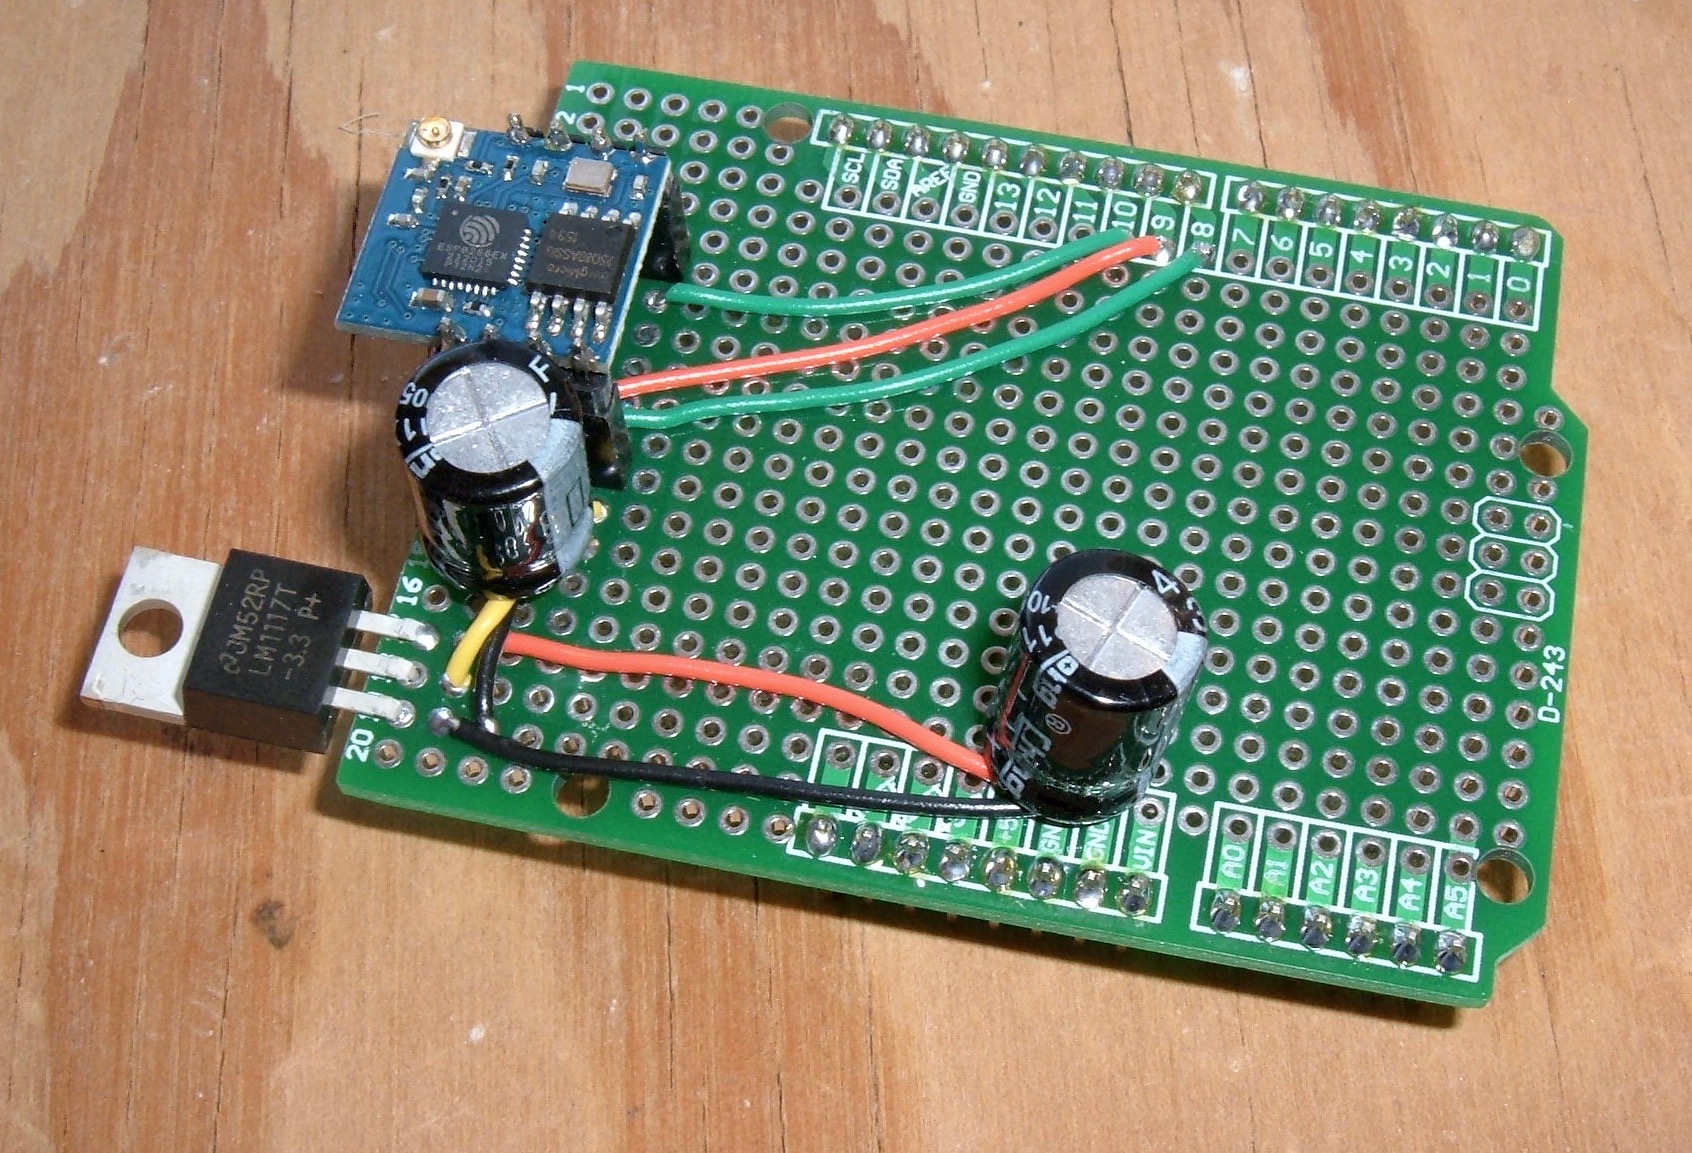 Building a $10 ESP02 based ESP8266 Arduino WiFi Shield